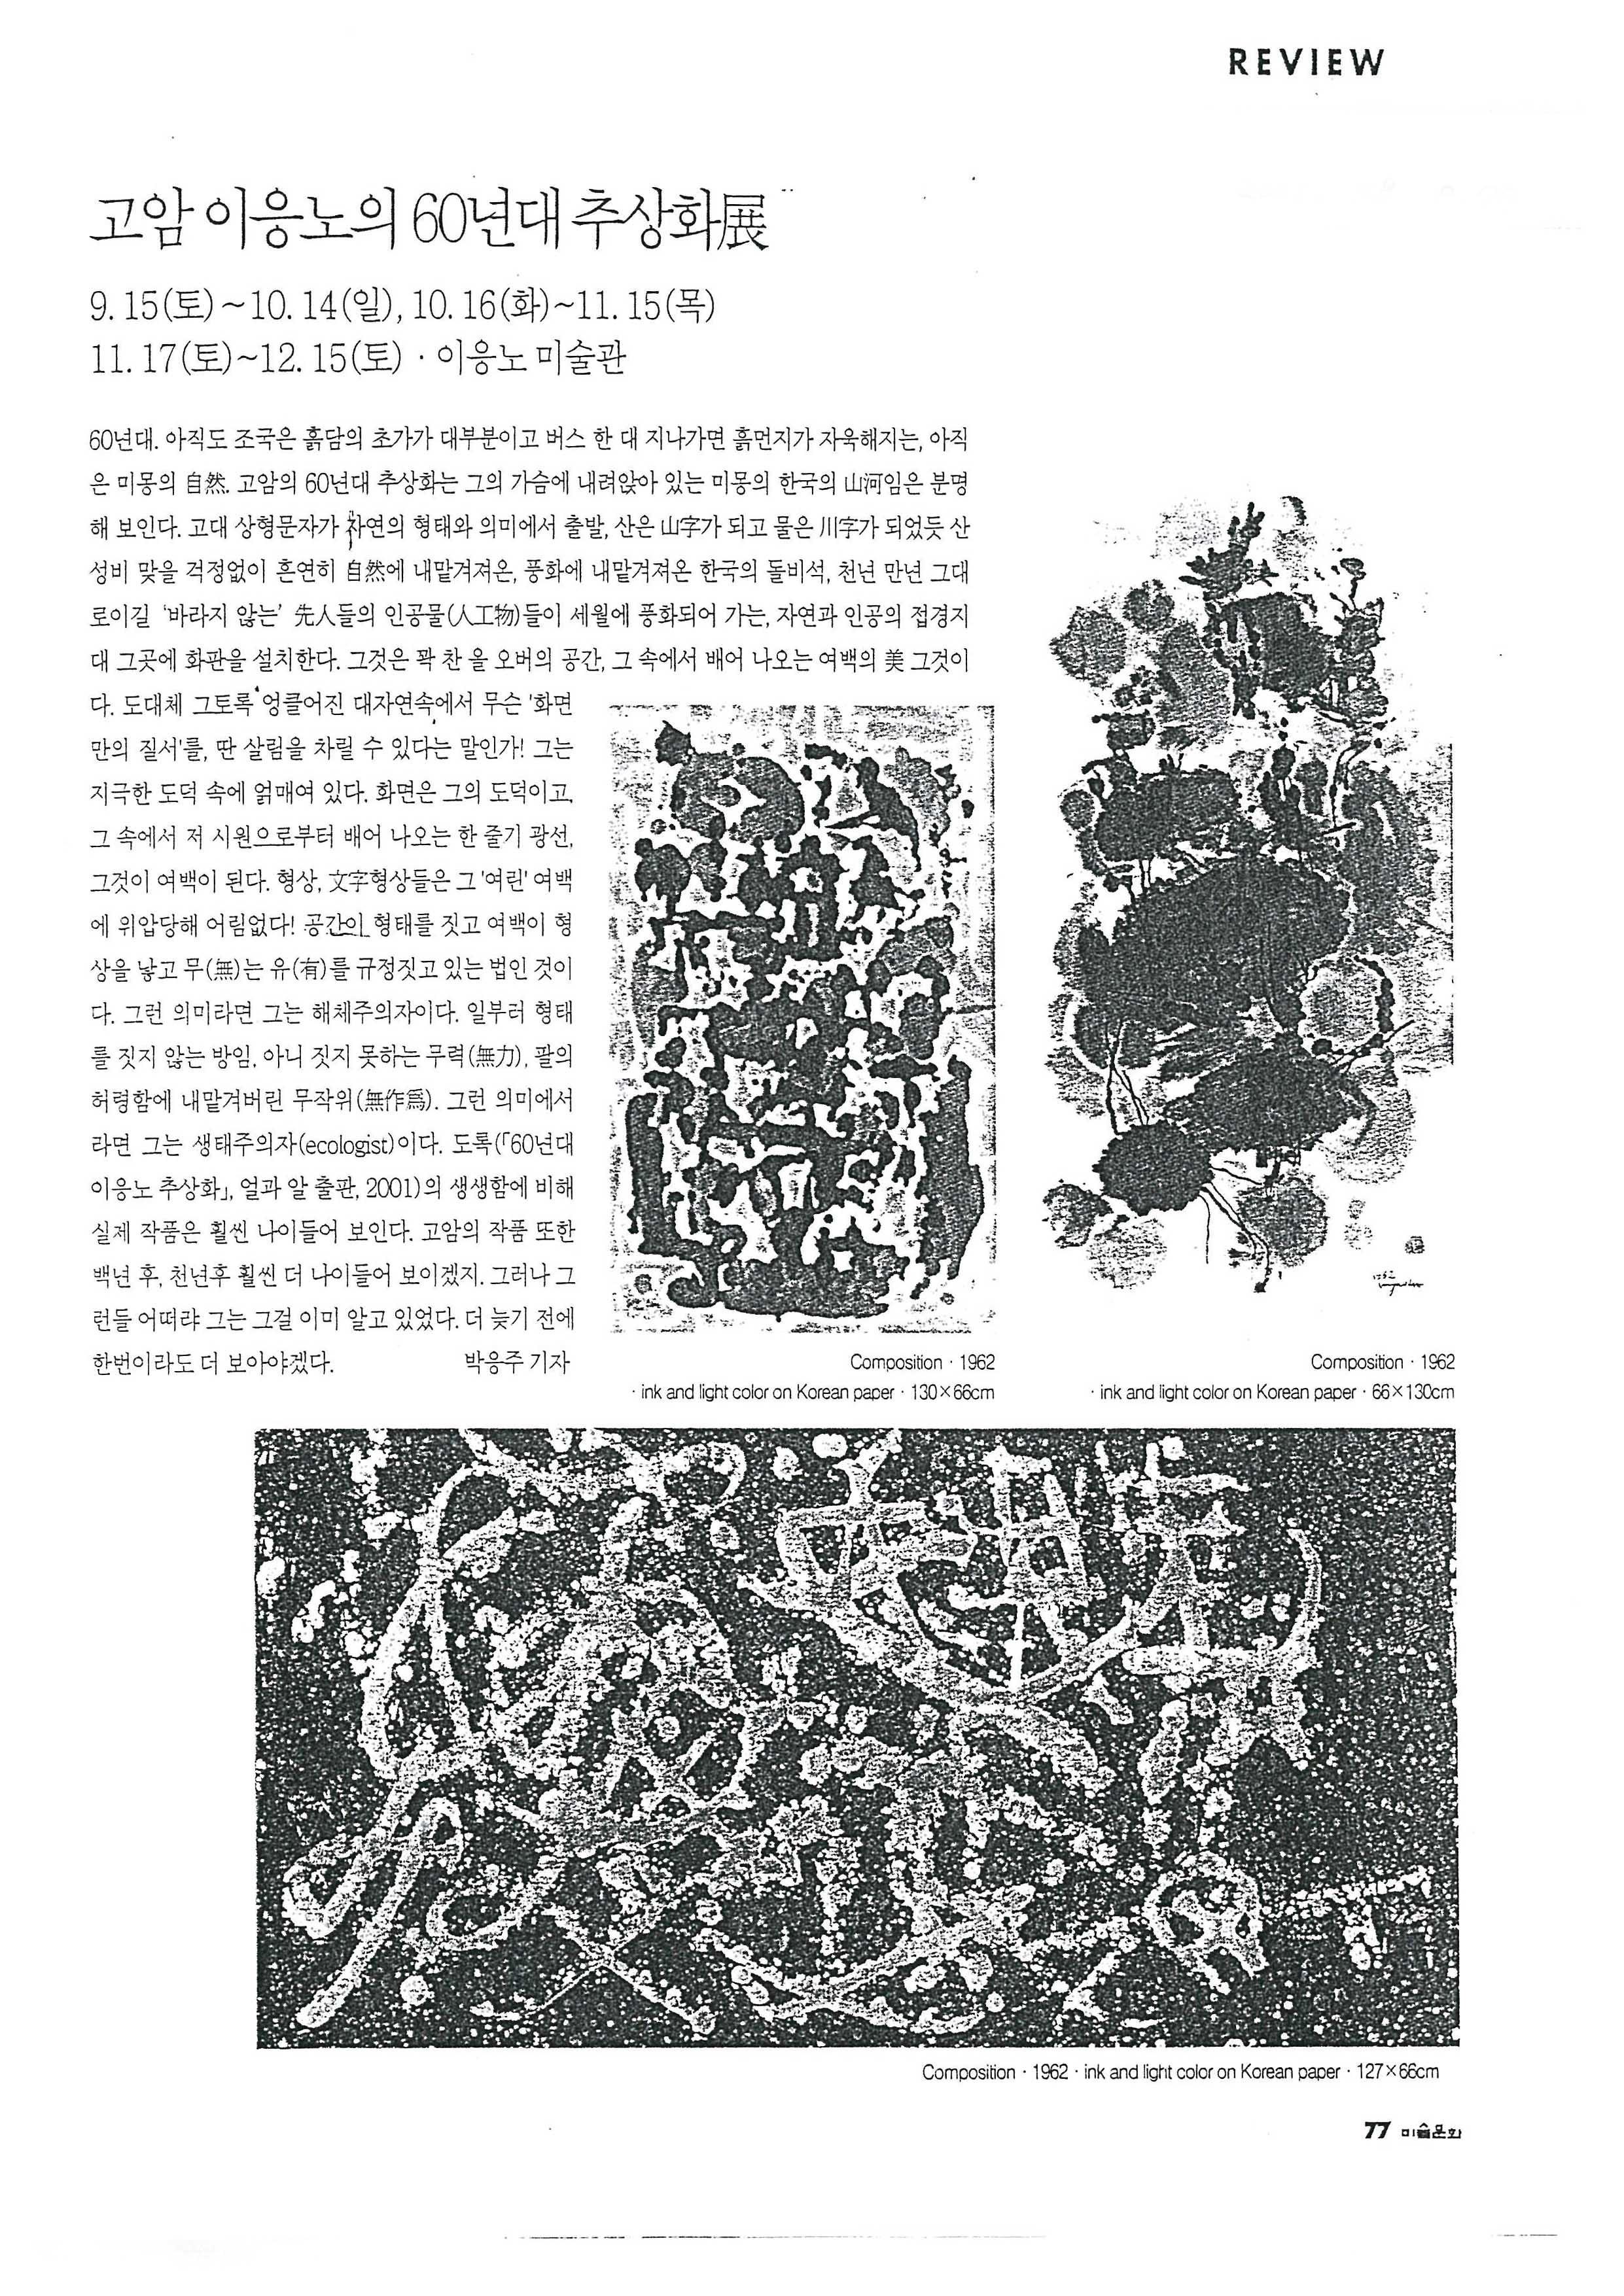  「고암 이응노의 60년대 추상화전」, 『미술문화』 